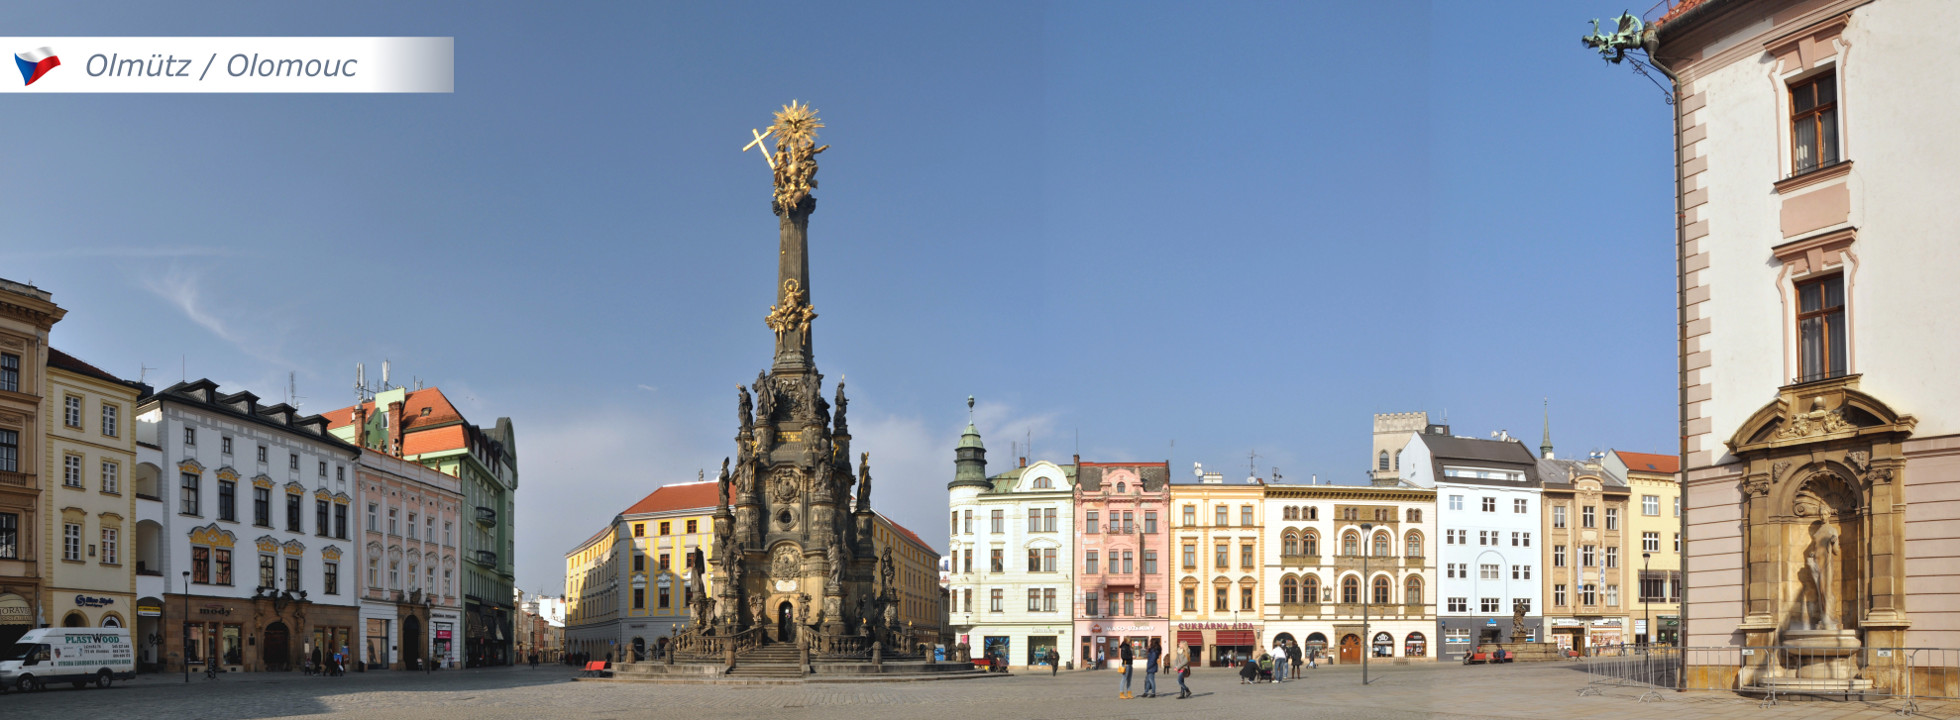 Olmütz - Oberring mit Dreifaltigkeitssäule und Rathaus